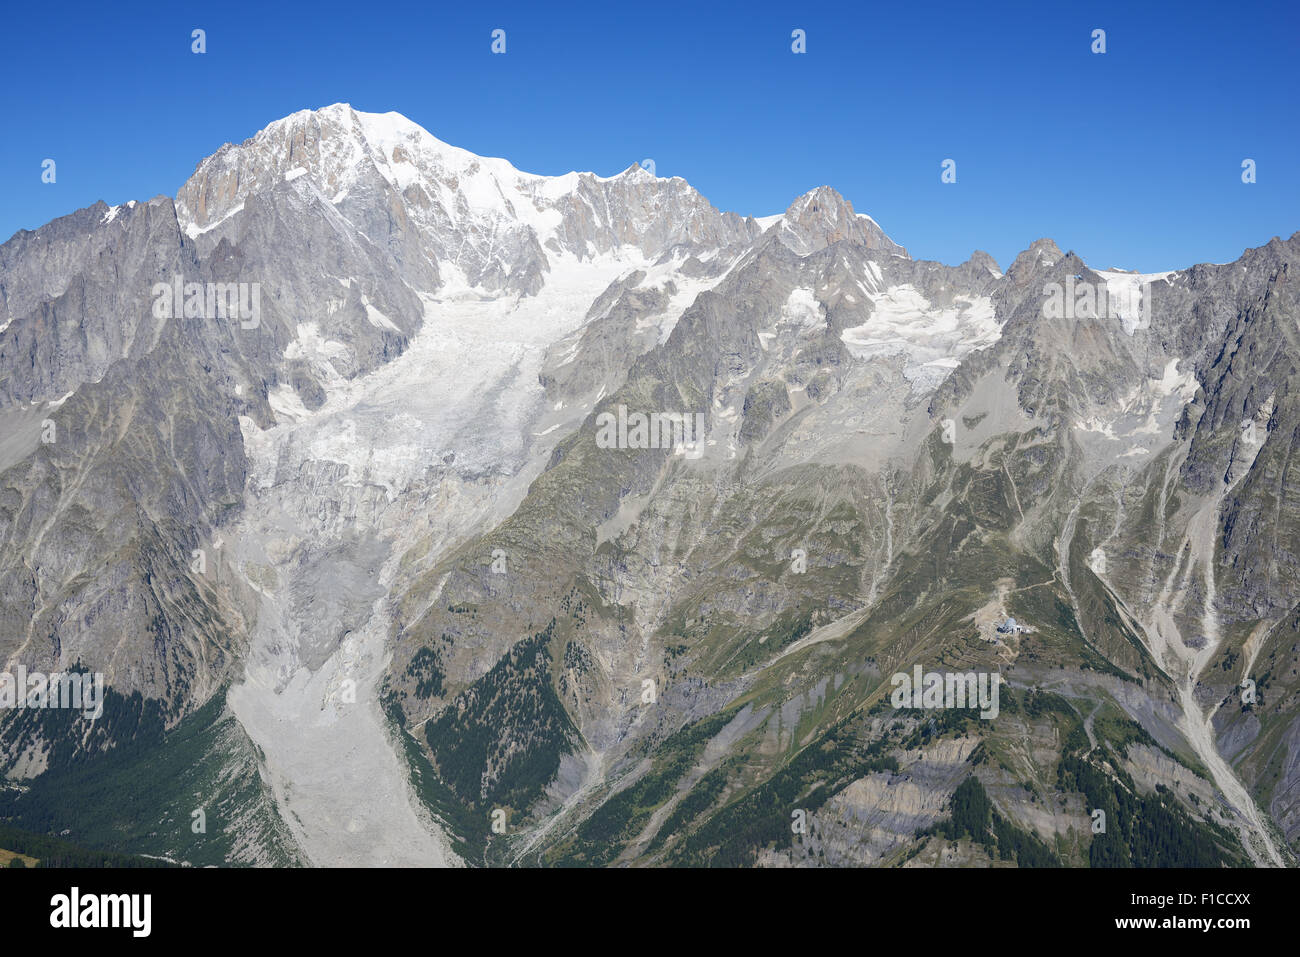 VUE AÉRIENNE.Sommet du Mont blanc (à gauche, altitude : 4810 mètres) en août, vue de l'est.Courmayeur, Vallée d'Aoste, Italie. Banque D'Images